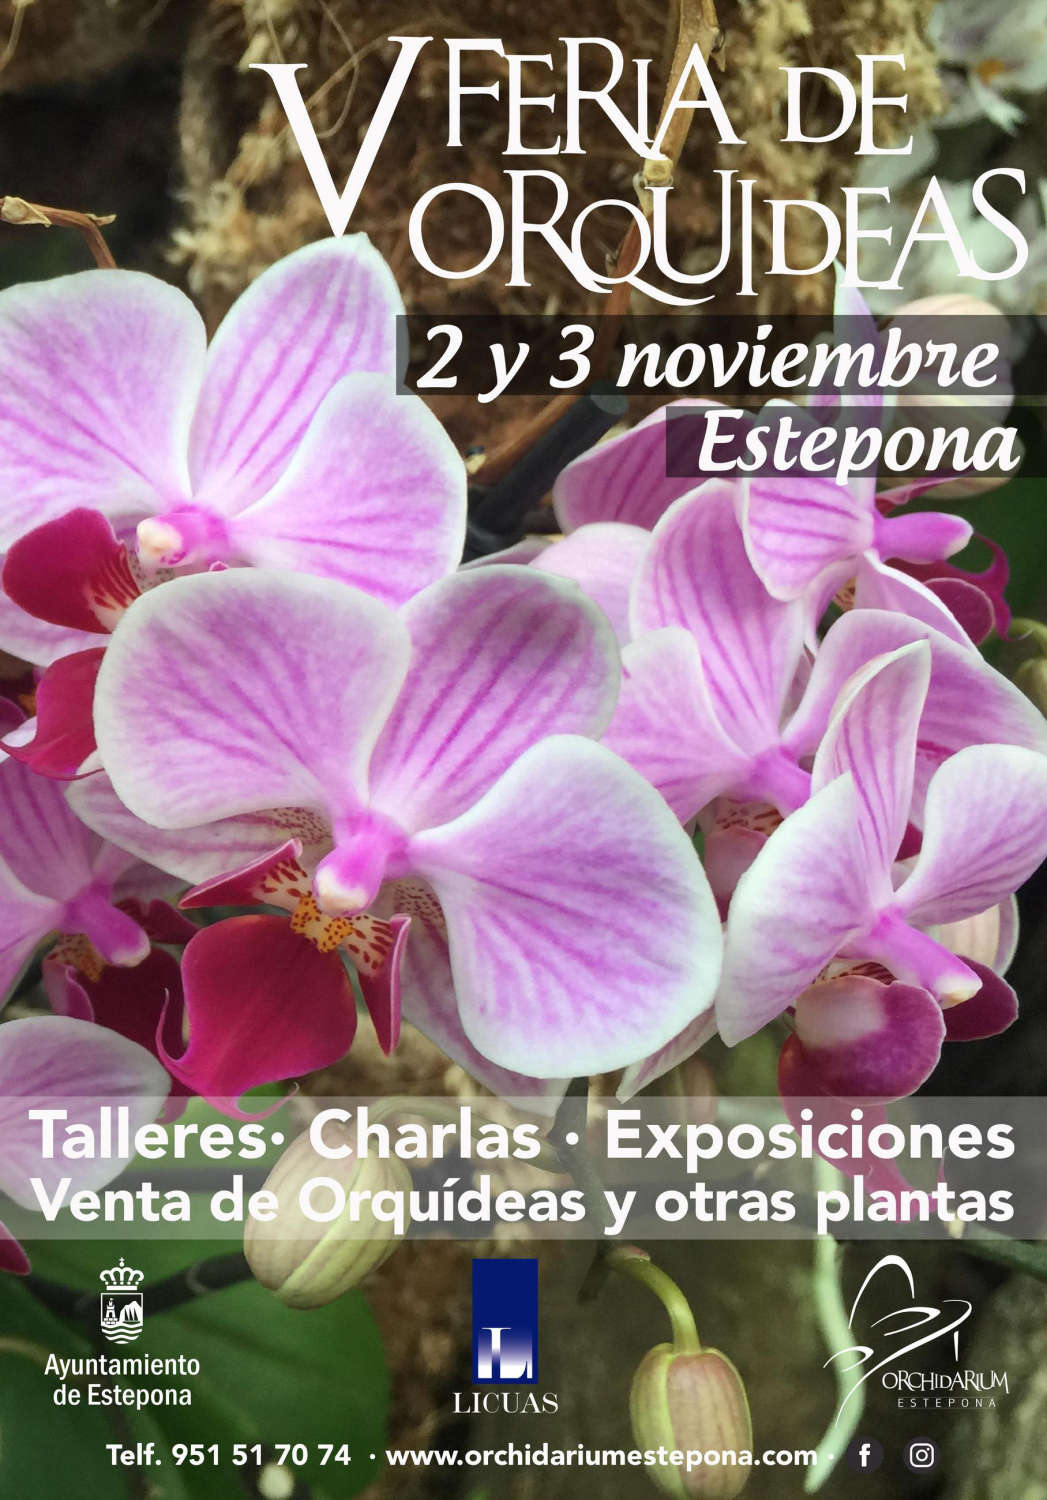 El Parque Botánico Orquidario de Estepona acoge la celebración de la V Feria de Orquídeas